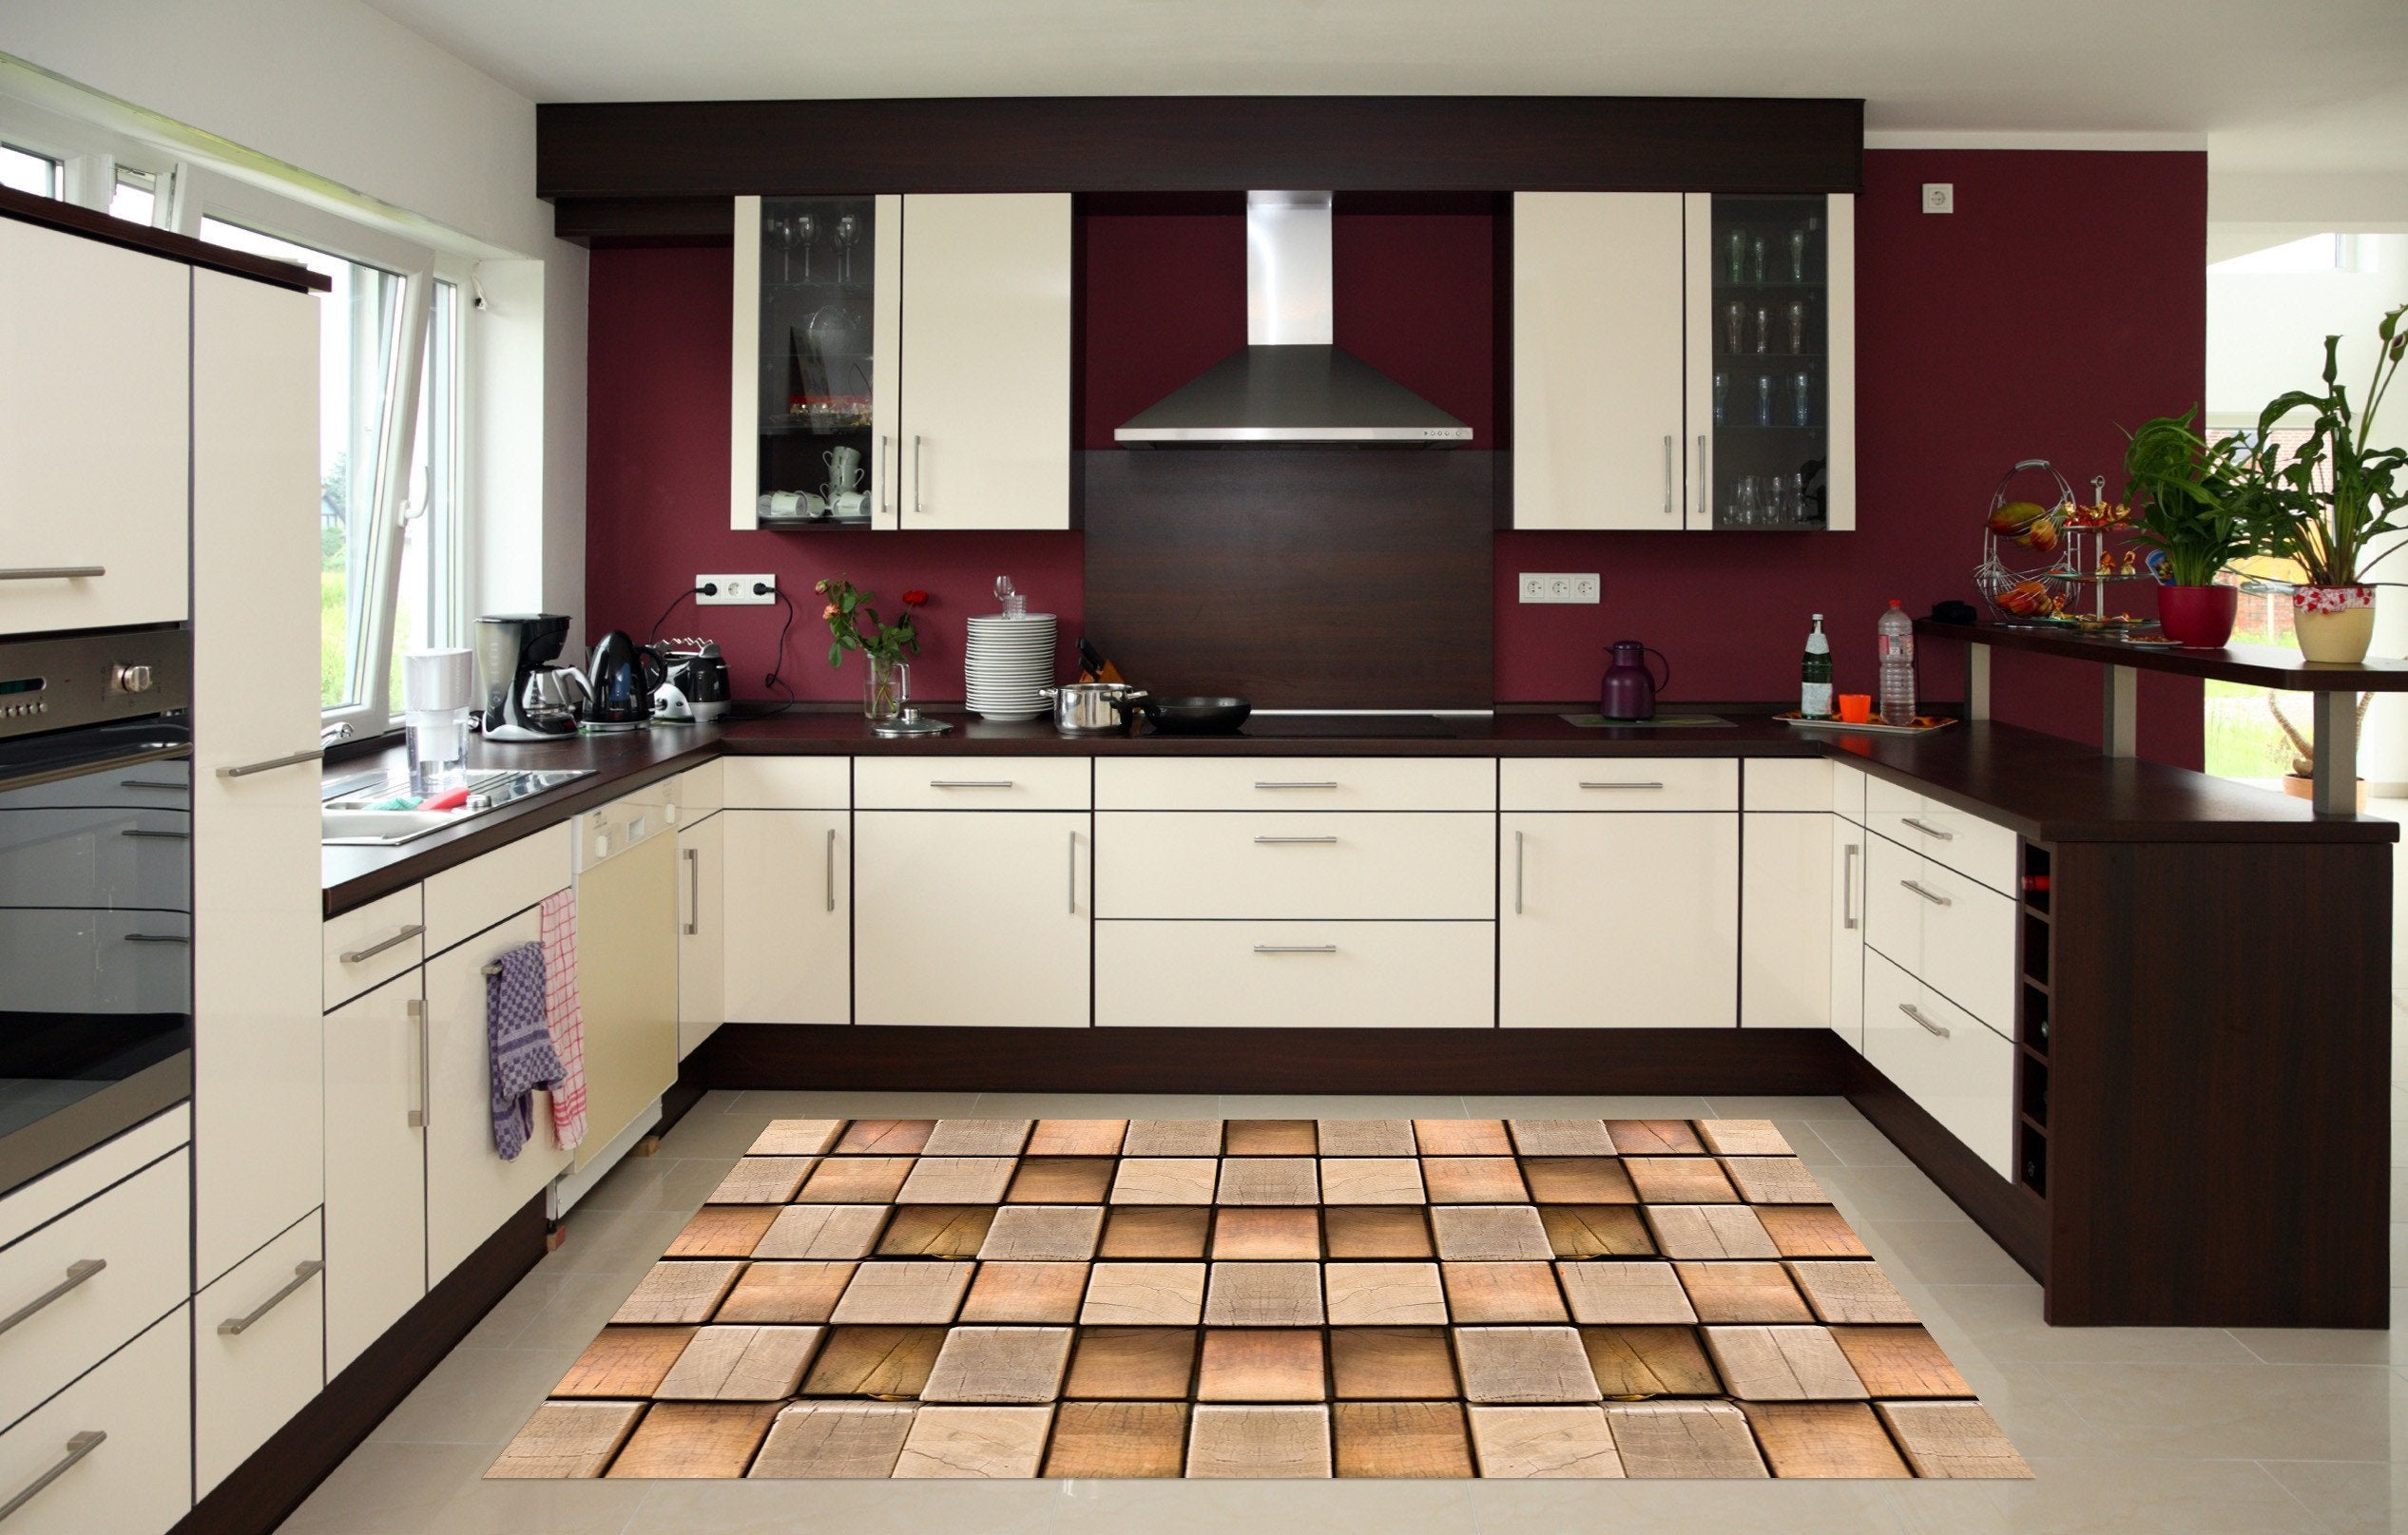 3D Wood Grids 155 Kitchen Mat Floor Mural Wallpaper AJ Wallpaper 